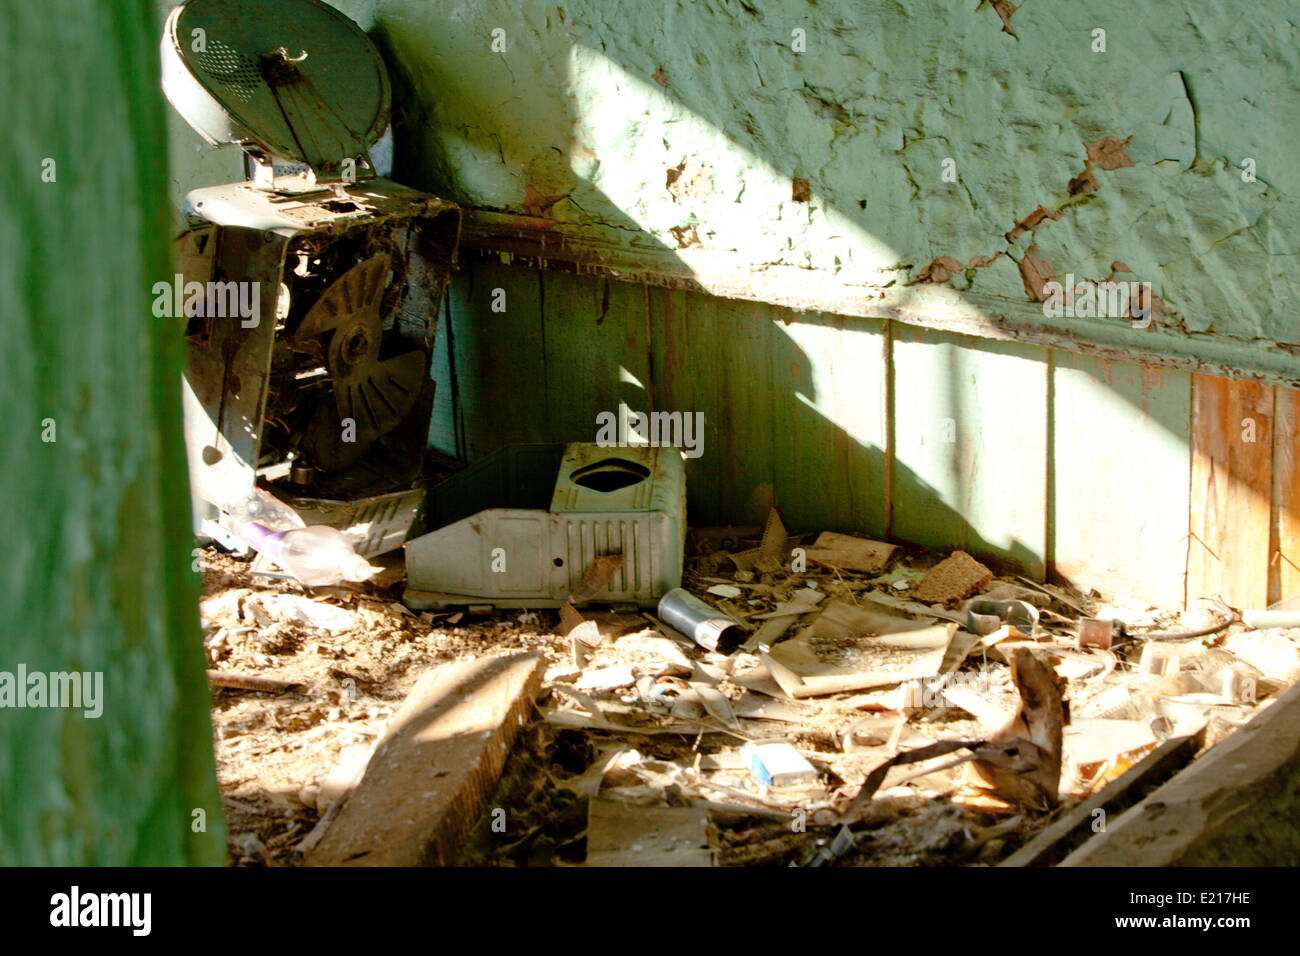 Casa abbandonata del degrado urbano rotto spazzatura indesiderata Foto Stock